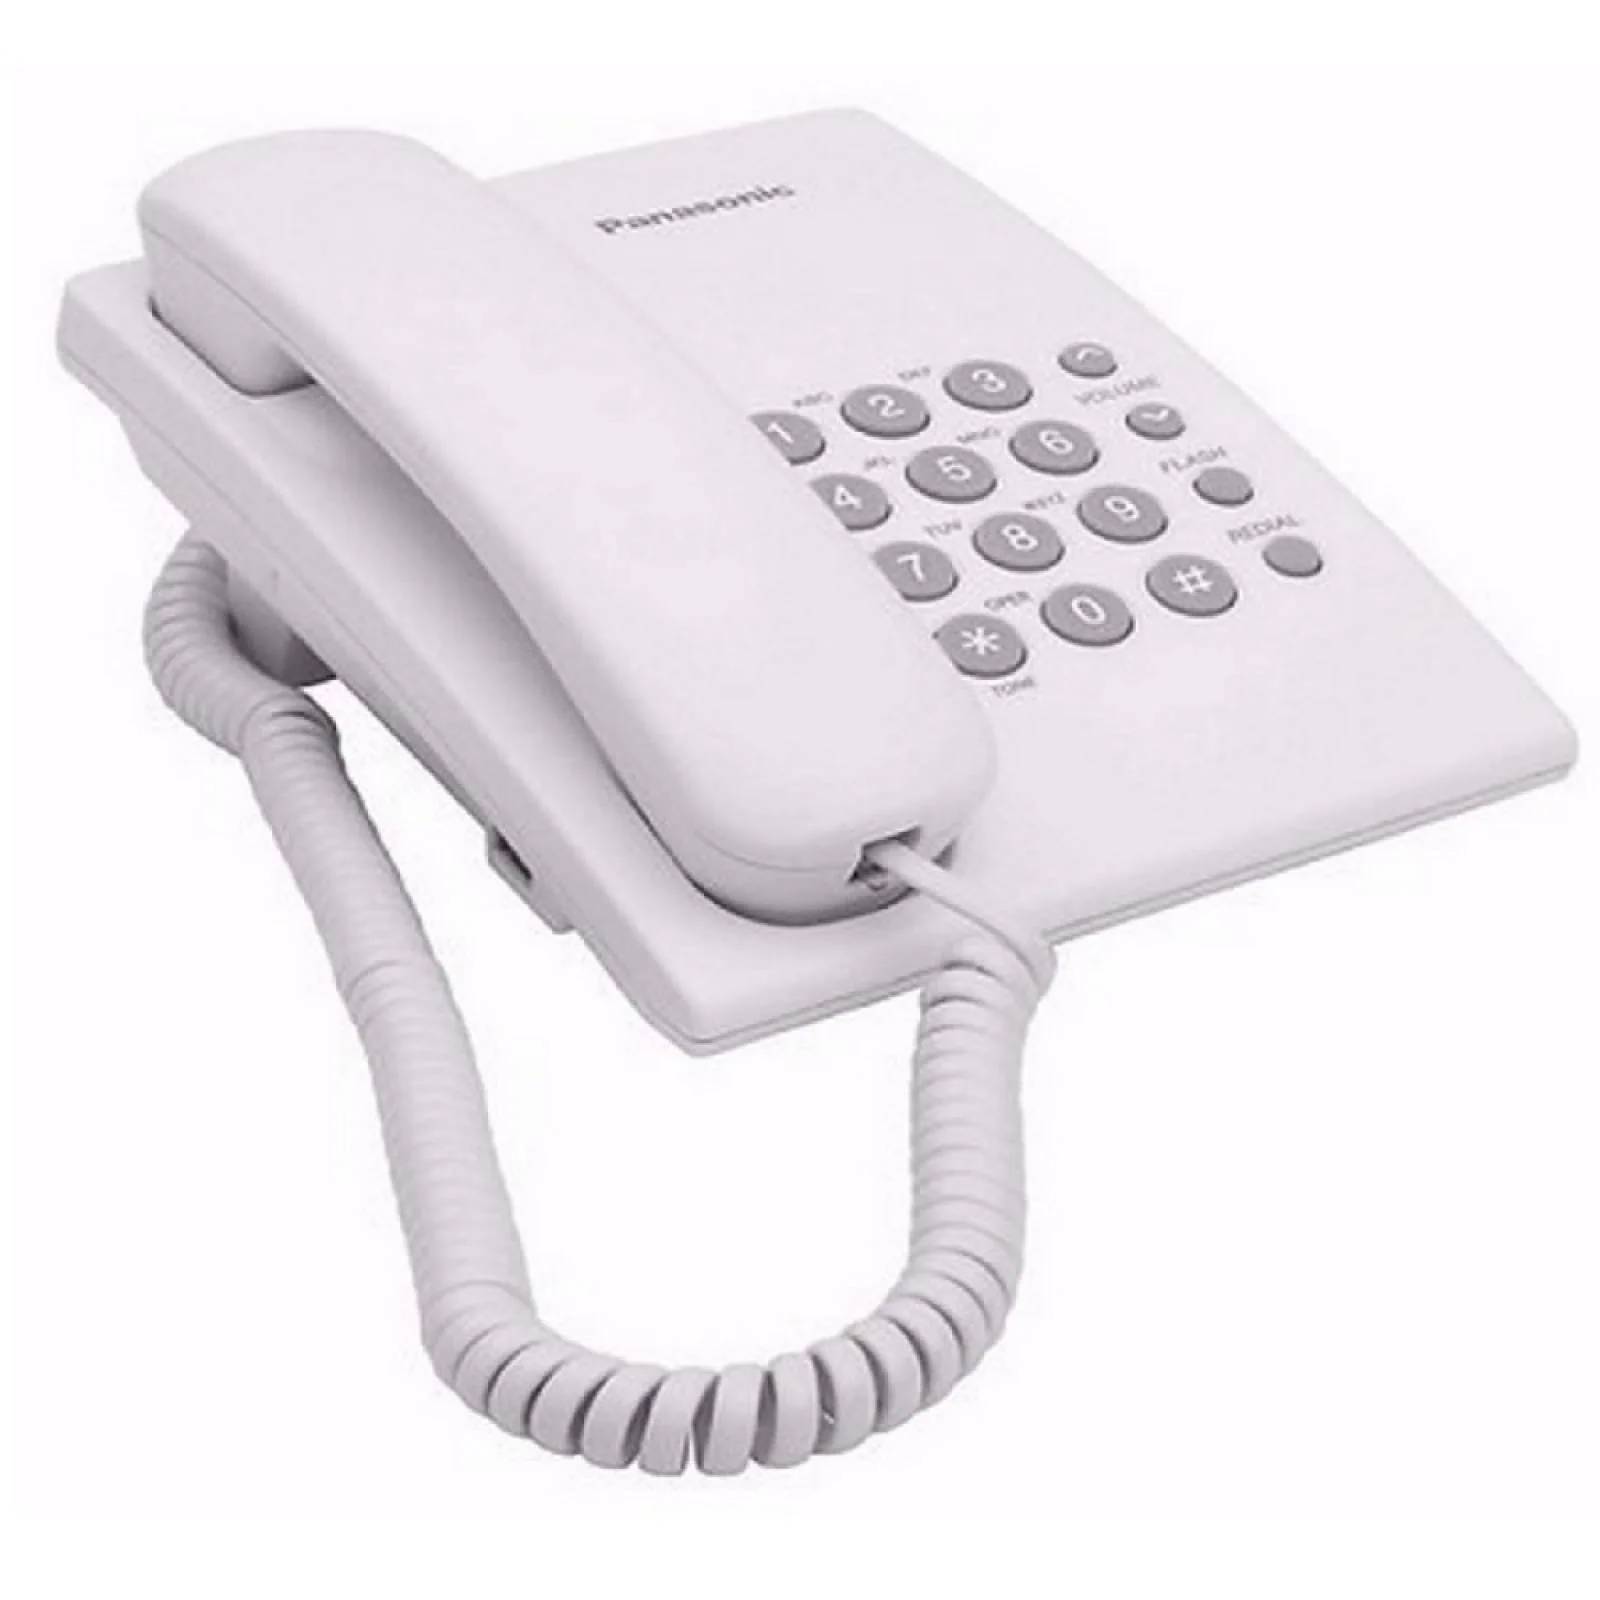 Teléfono fijo con cable Panasonic KX-TS500